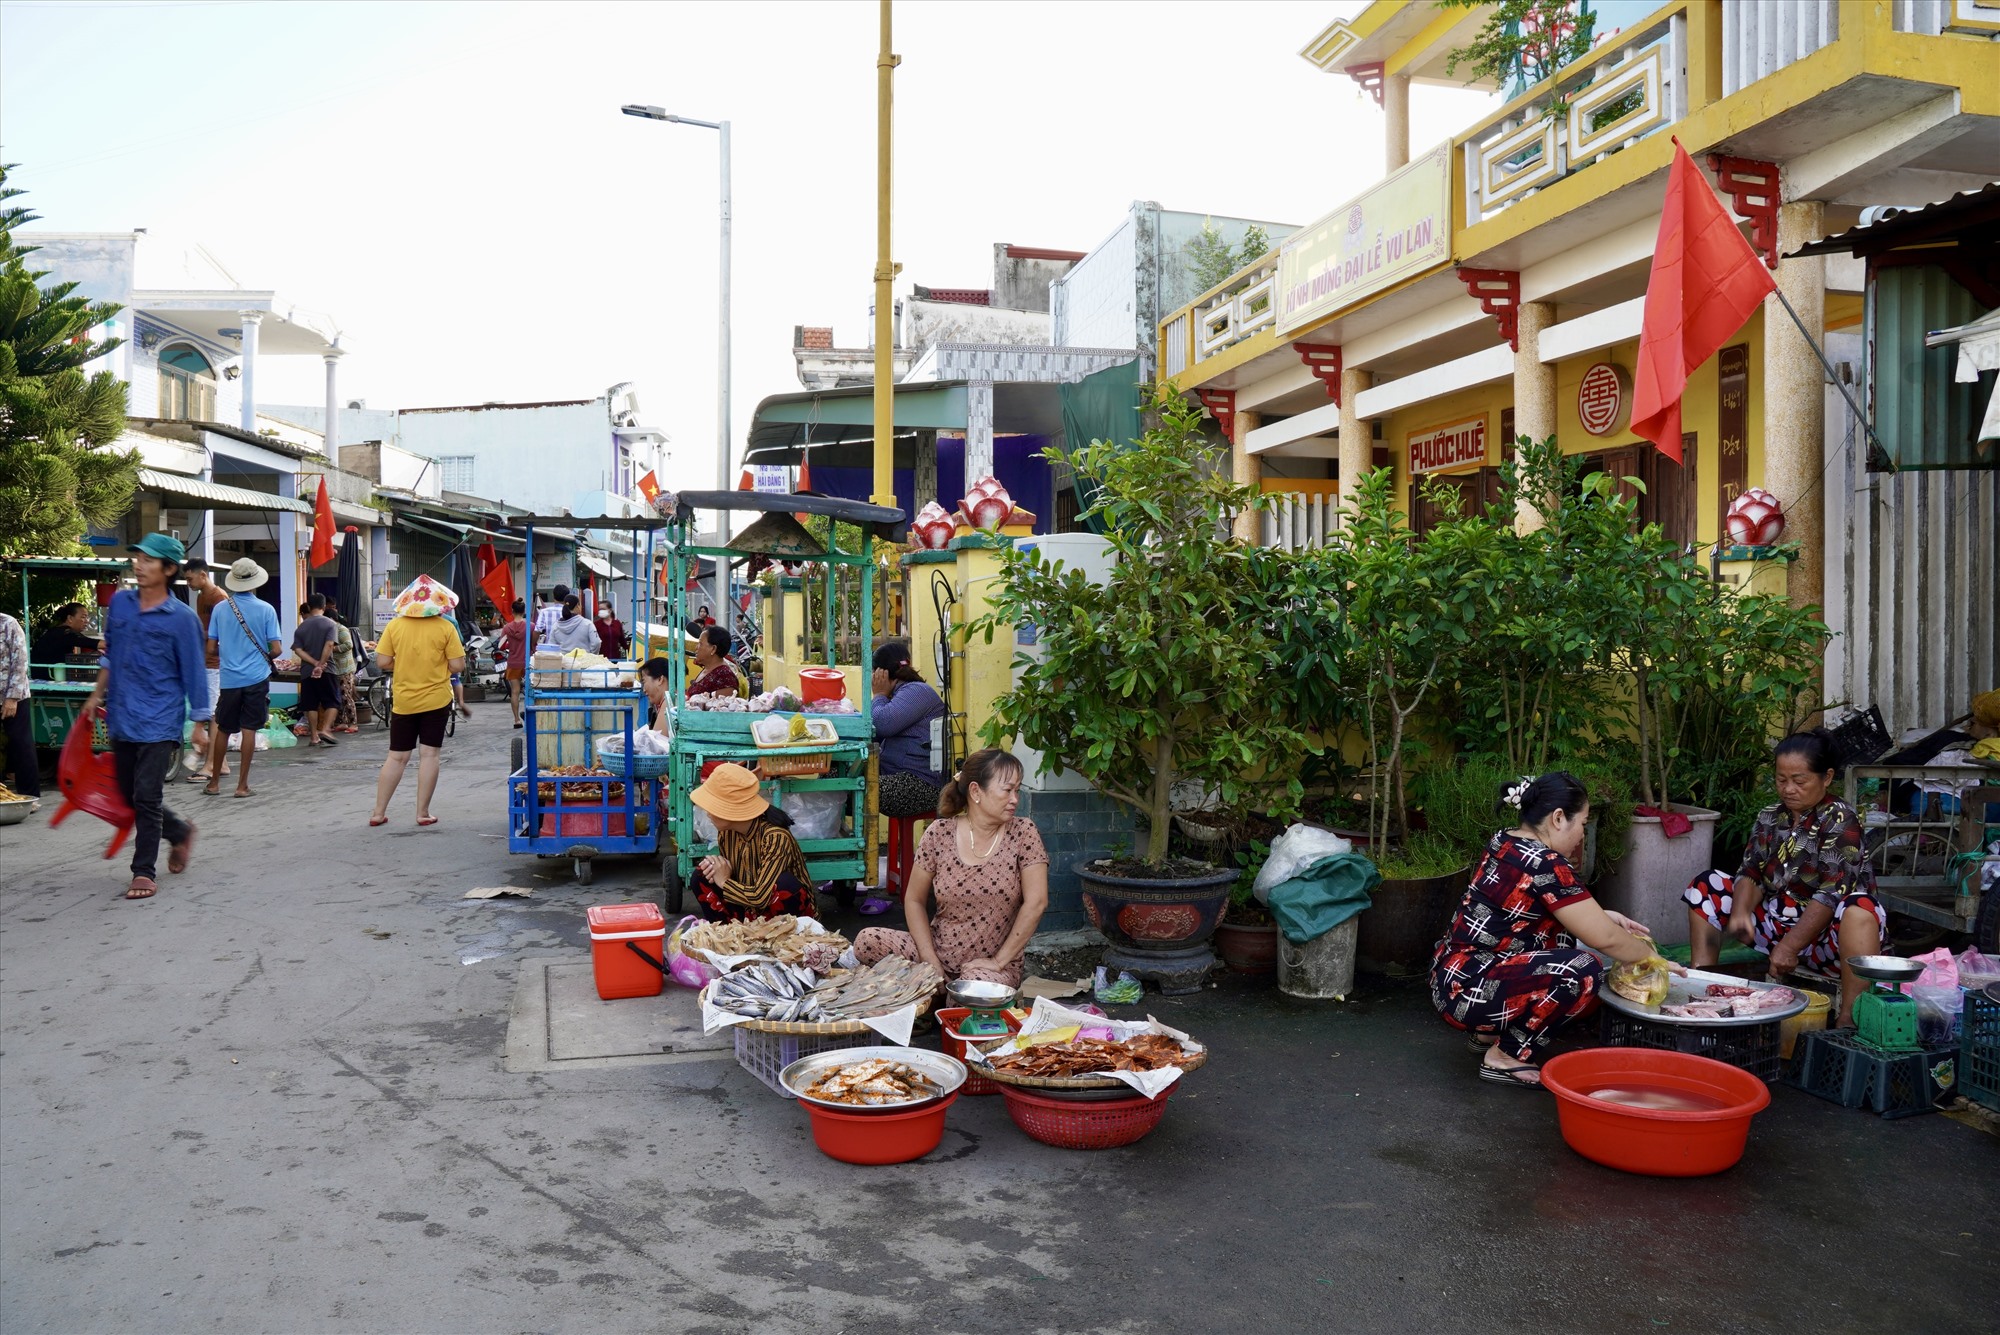 Gần trung tâm xã đảo, người dân thường bắt đầu họp chợ hàng ngày từ 5h đến 9h, để phục vụ nhu cầu mua sắm, ăn uống của cộng đồng địa phương.